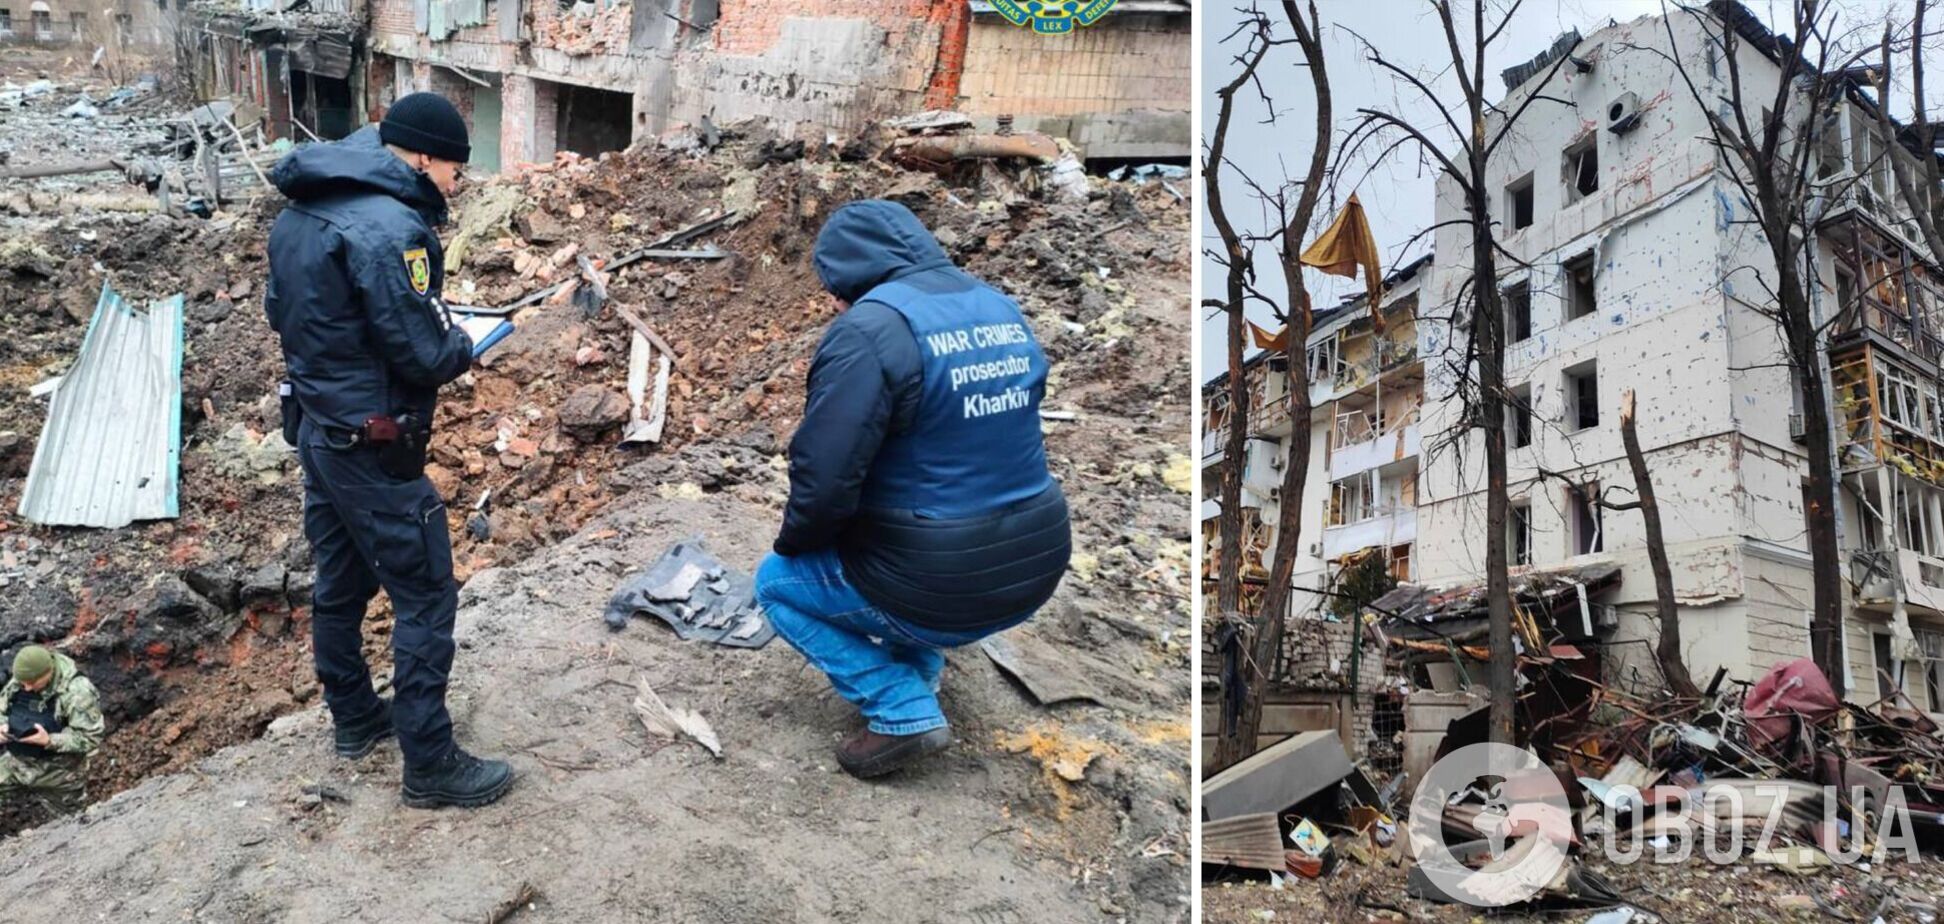 Зросла кількість жертв атаки РФ на Харків 2 січня: у лікарні помер постраждалий чоловік